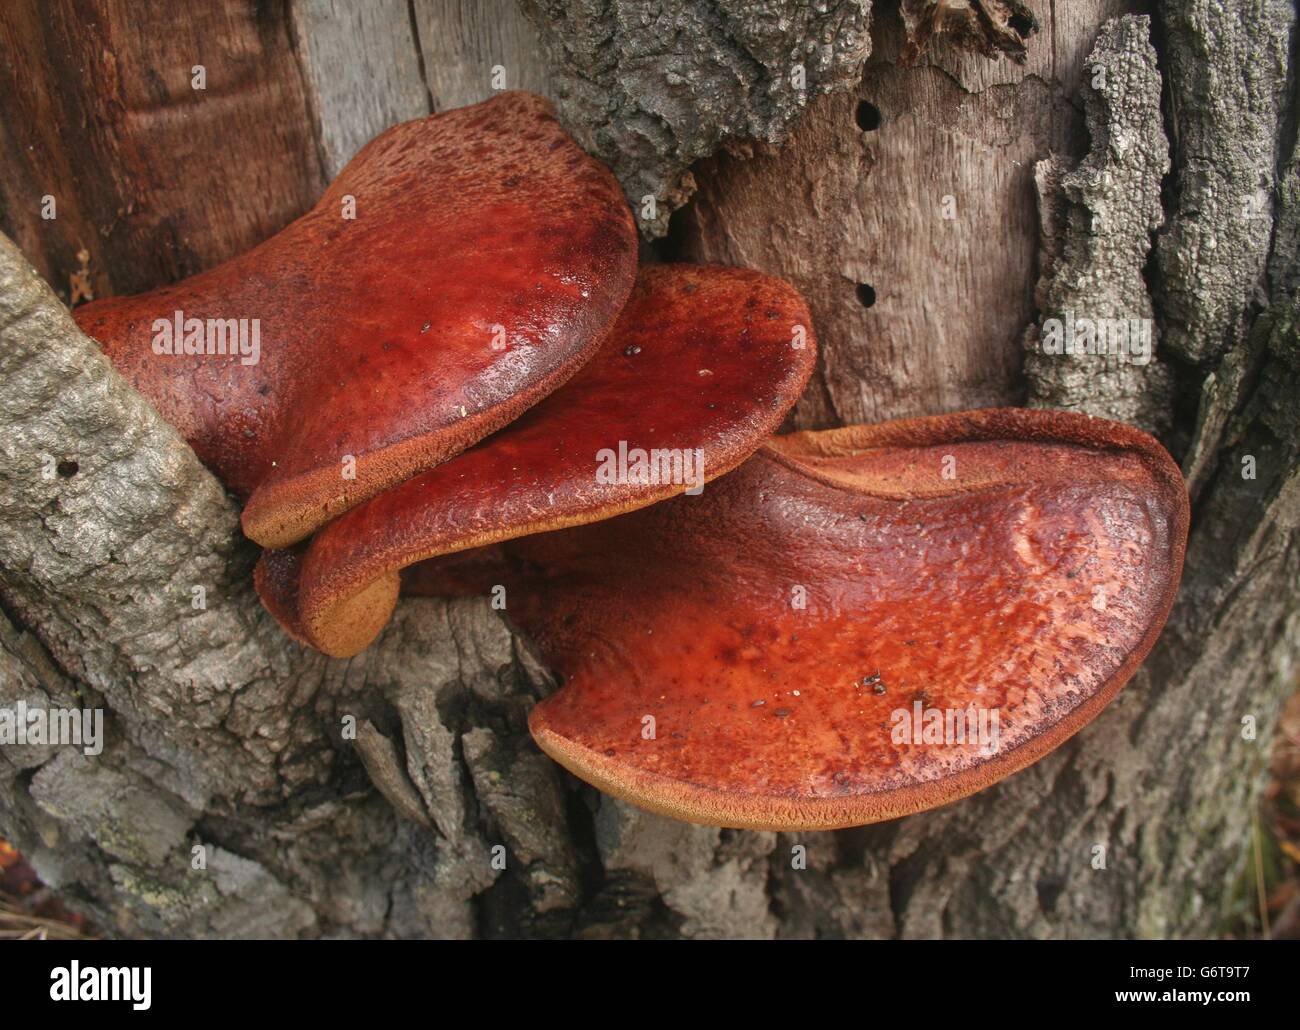 Champignon Beefsteak également connu sous le nom de langue de boeuf (Fistulina hepatica) est parasitaire champignon qui pousse souvent sur le chêne. Banque D'Images